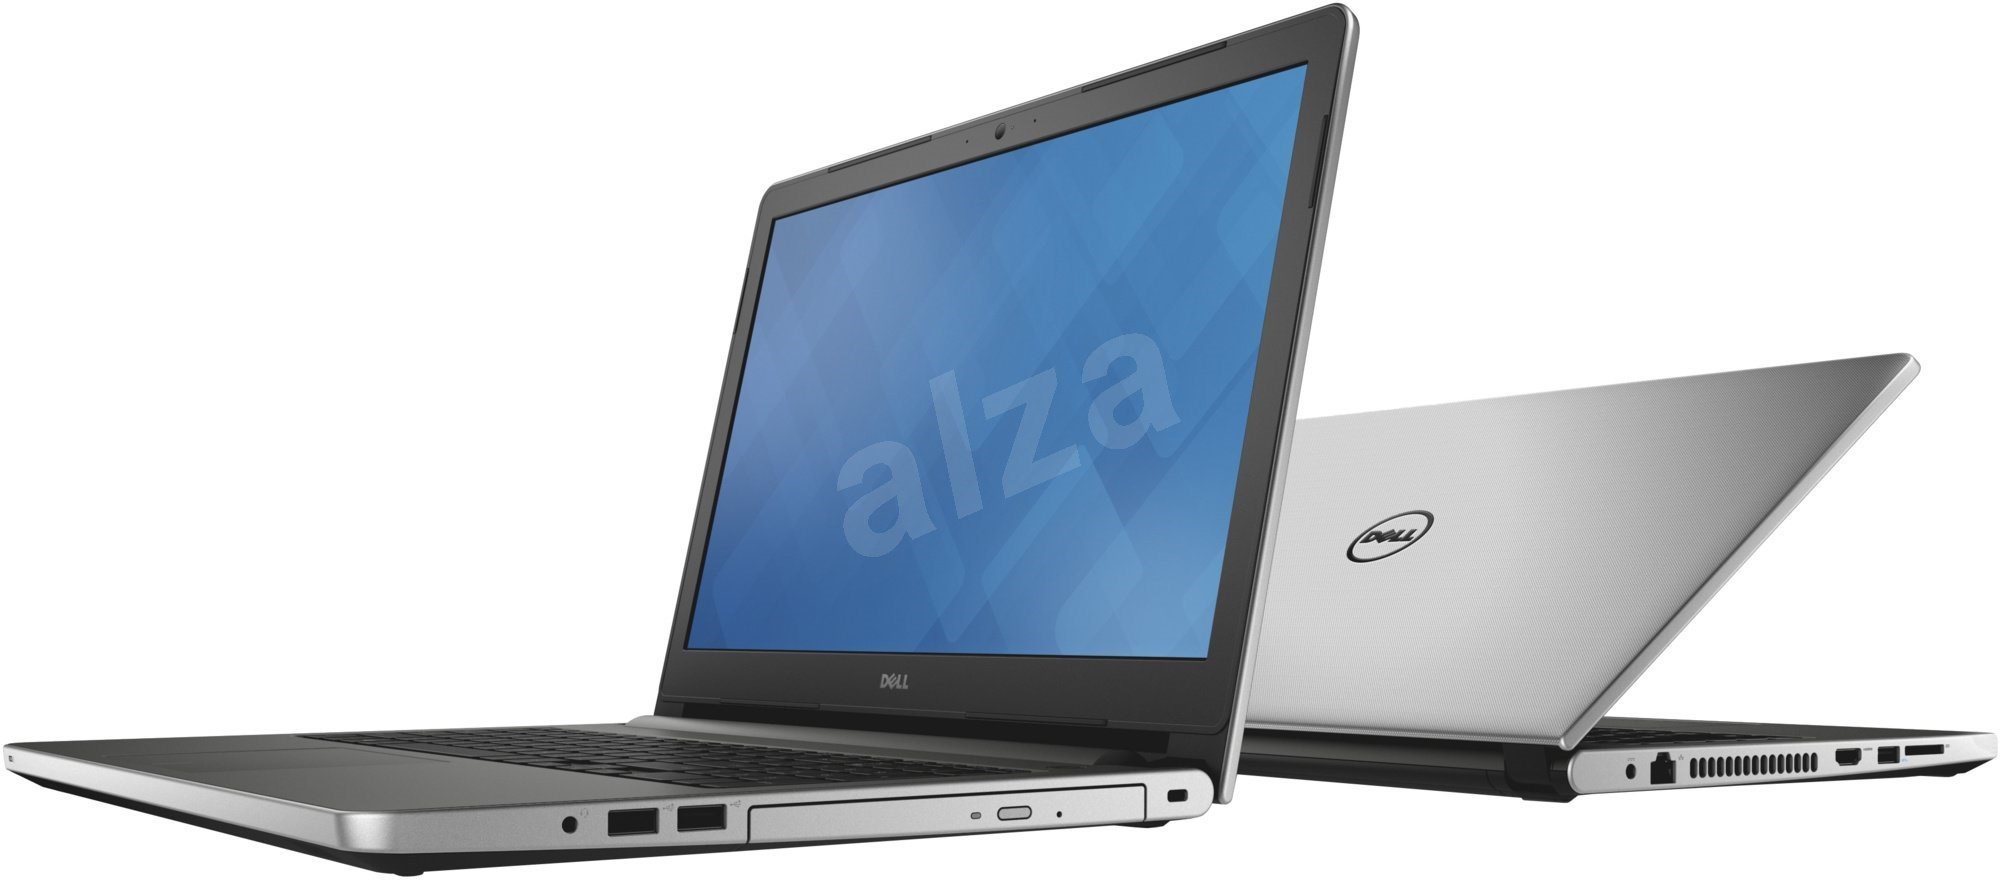 Dell Inspiron 15 (3000) - Notebook | Alza.cz